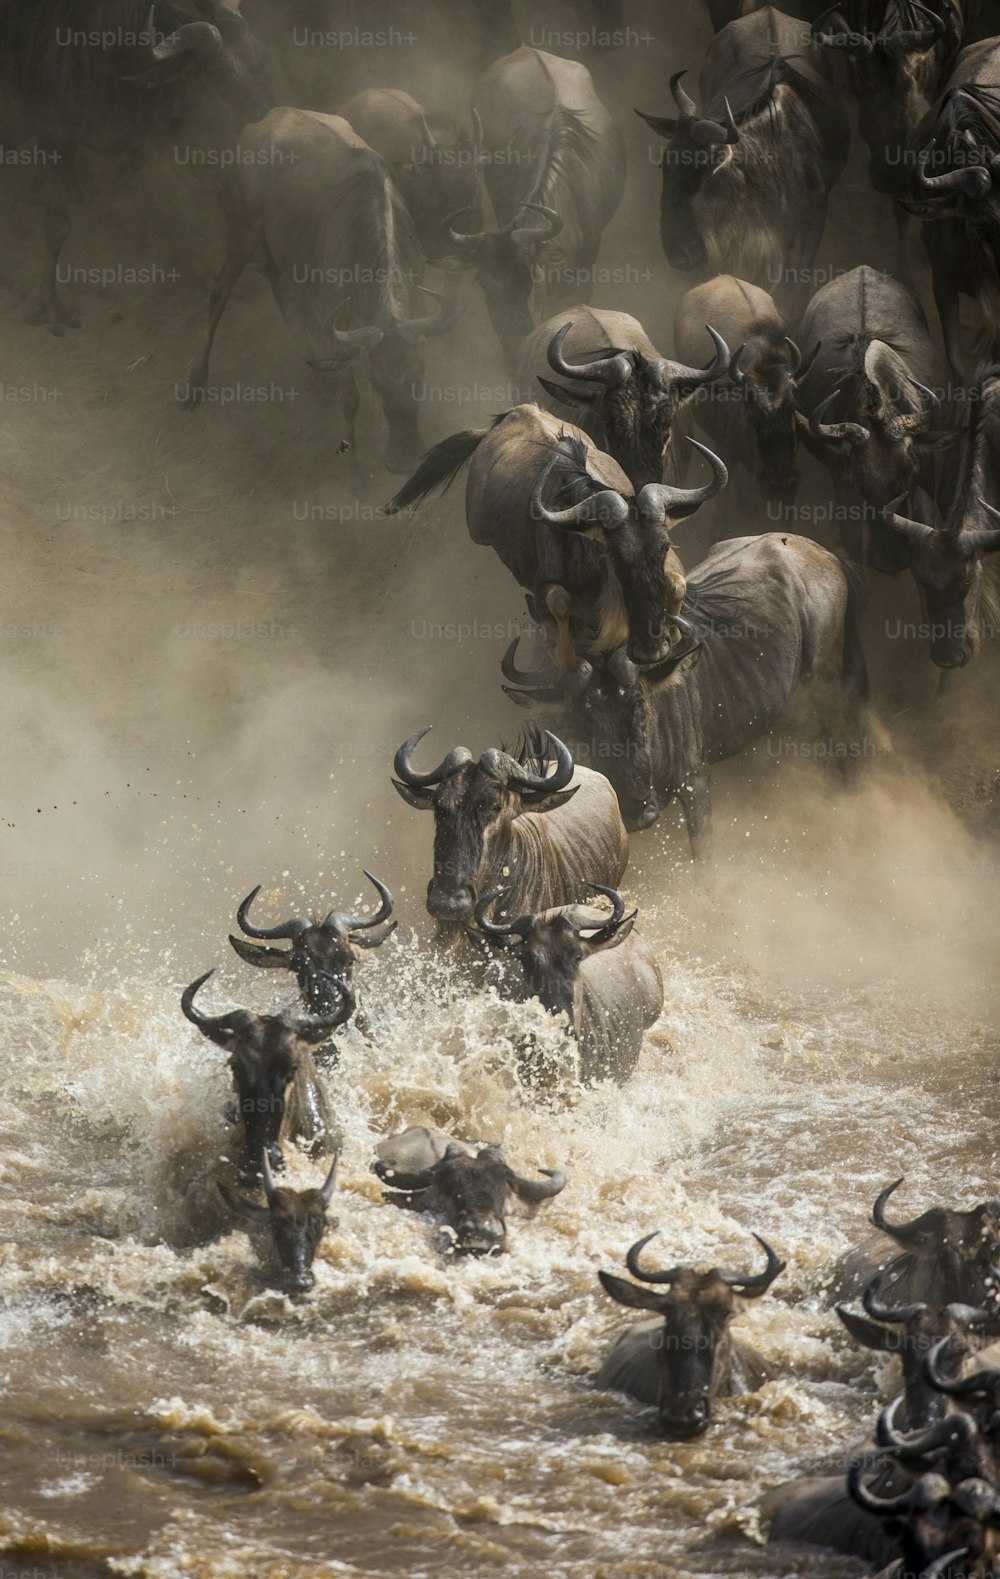 Ñus saltando al río Mara. Gran Migración. Kenia. Tanzania. Parque Nacional Masai Mara. Una excelente ilustración.